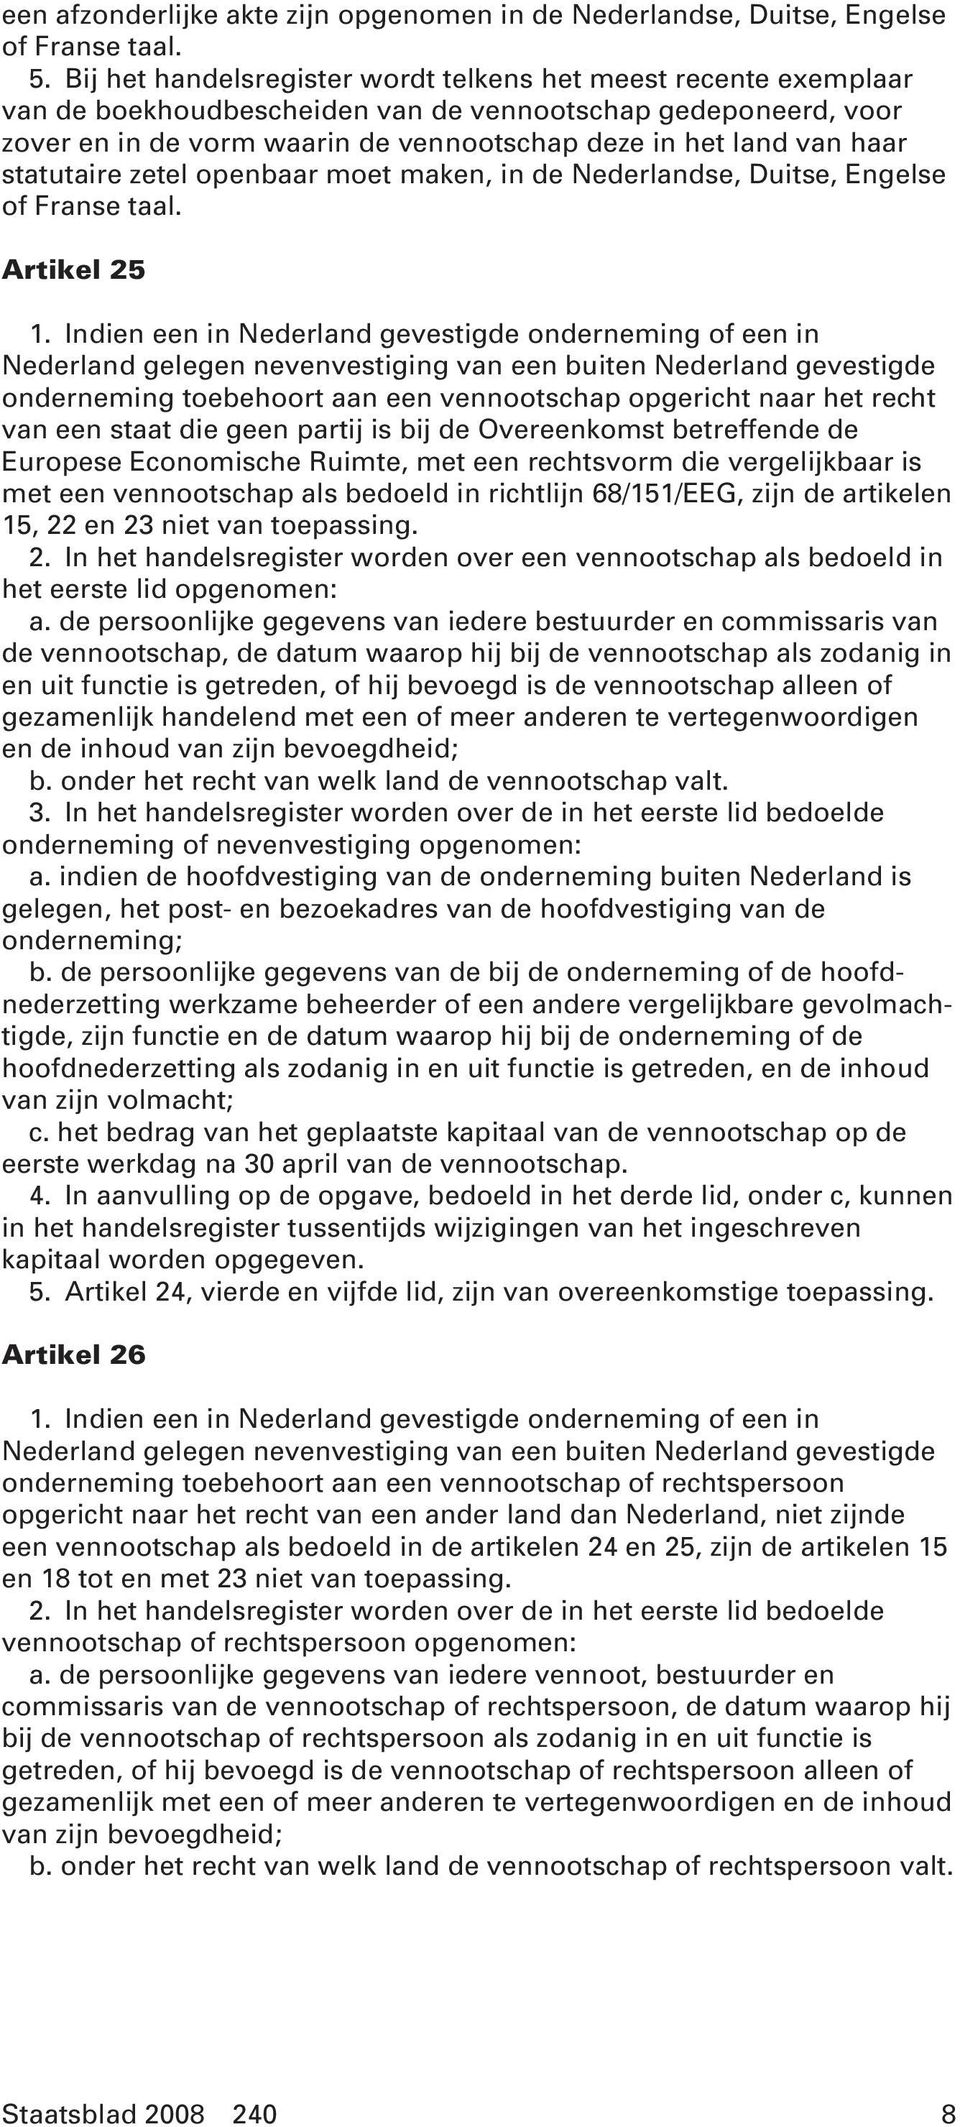 statutaire zetel openbaar moet maken, in de Nederlandse, Duitse, Engelse of Franse taal. Artikel 25 1.